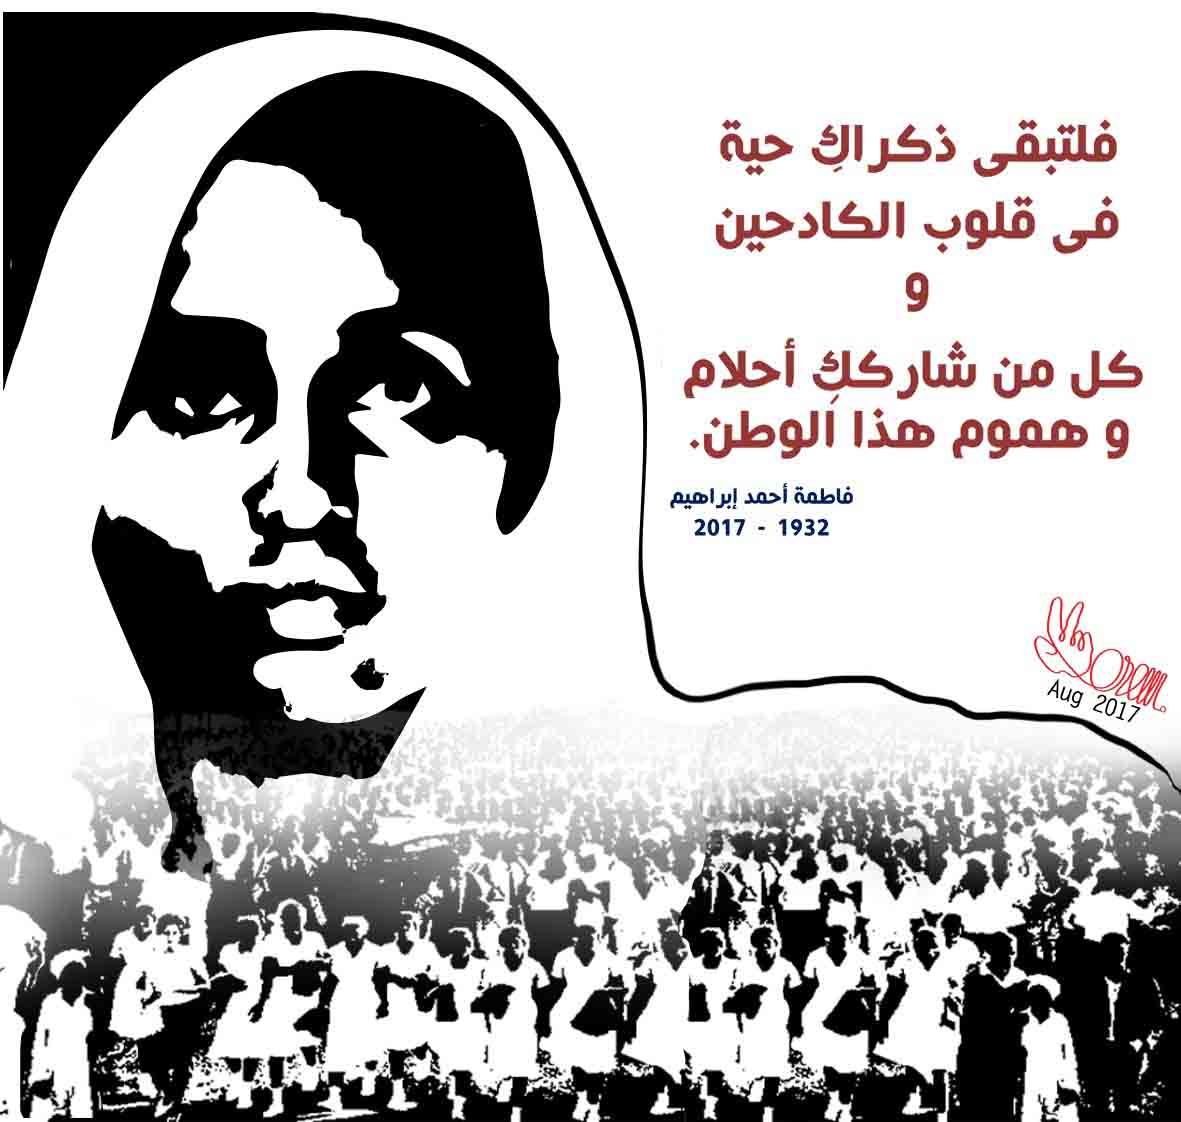 الجبهة الديمقراطية لتحرير فلسطين;وداعاً، فاطمة أحمد إبراهيم، إبنة السودان الشقيق 